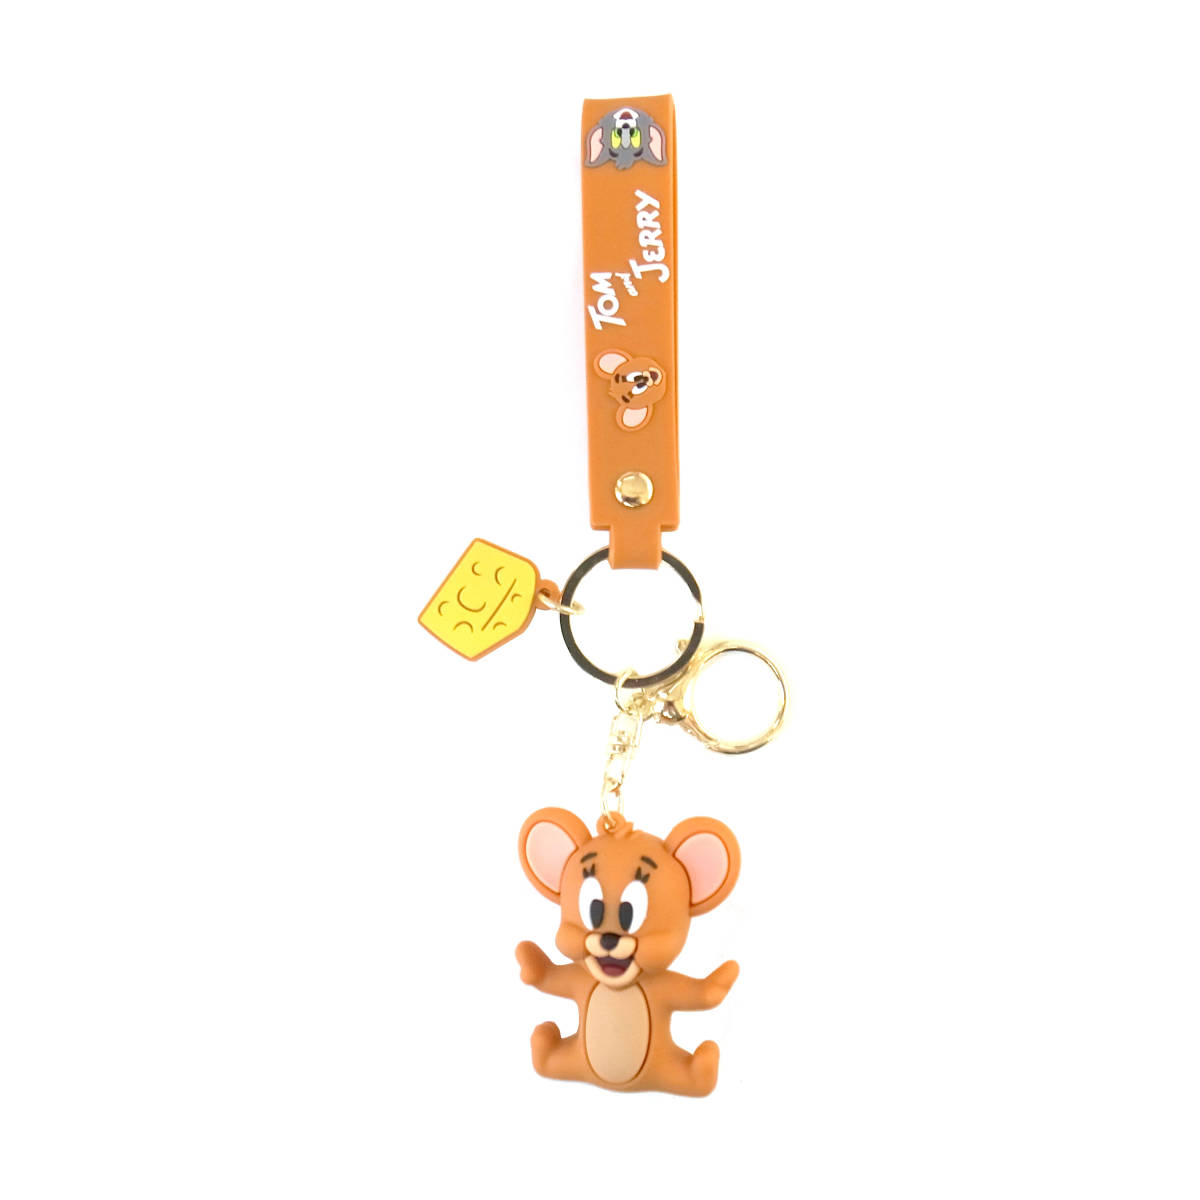  Tom . Jerry цельный эмблема брелок для ключа с ремешком . Jerry дизайн 